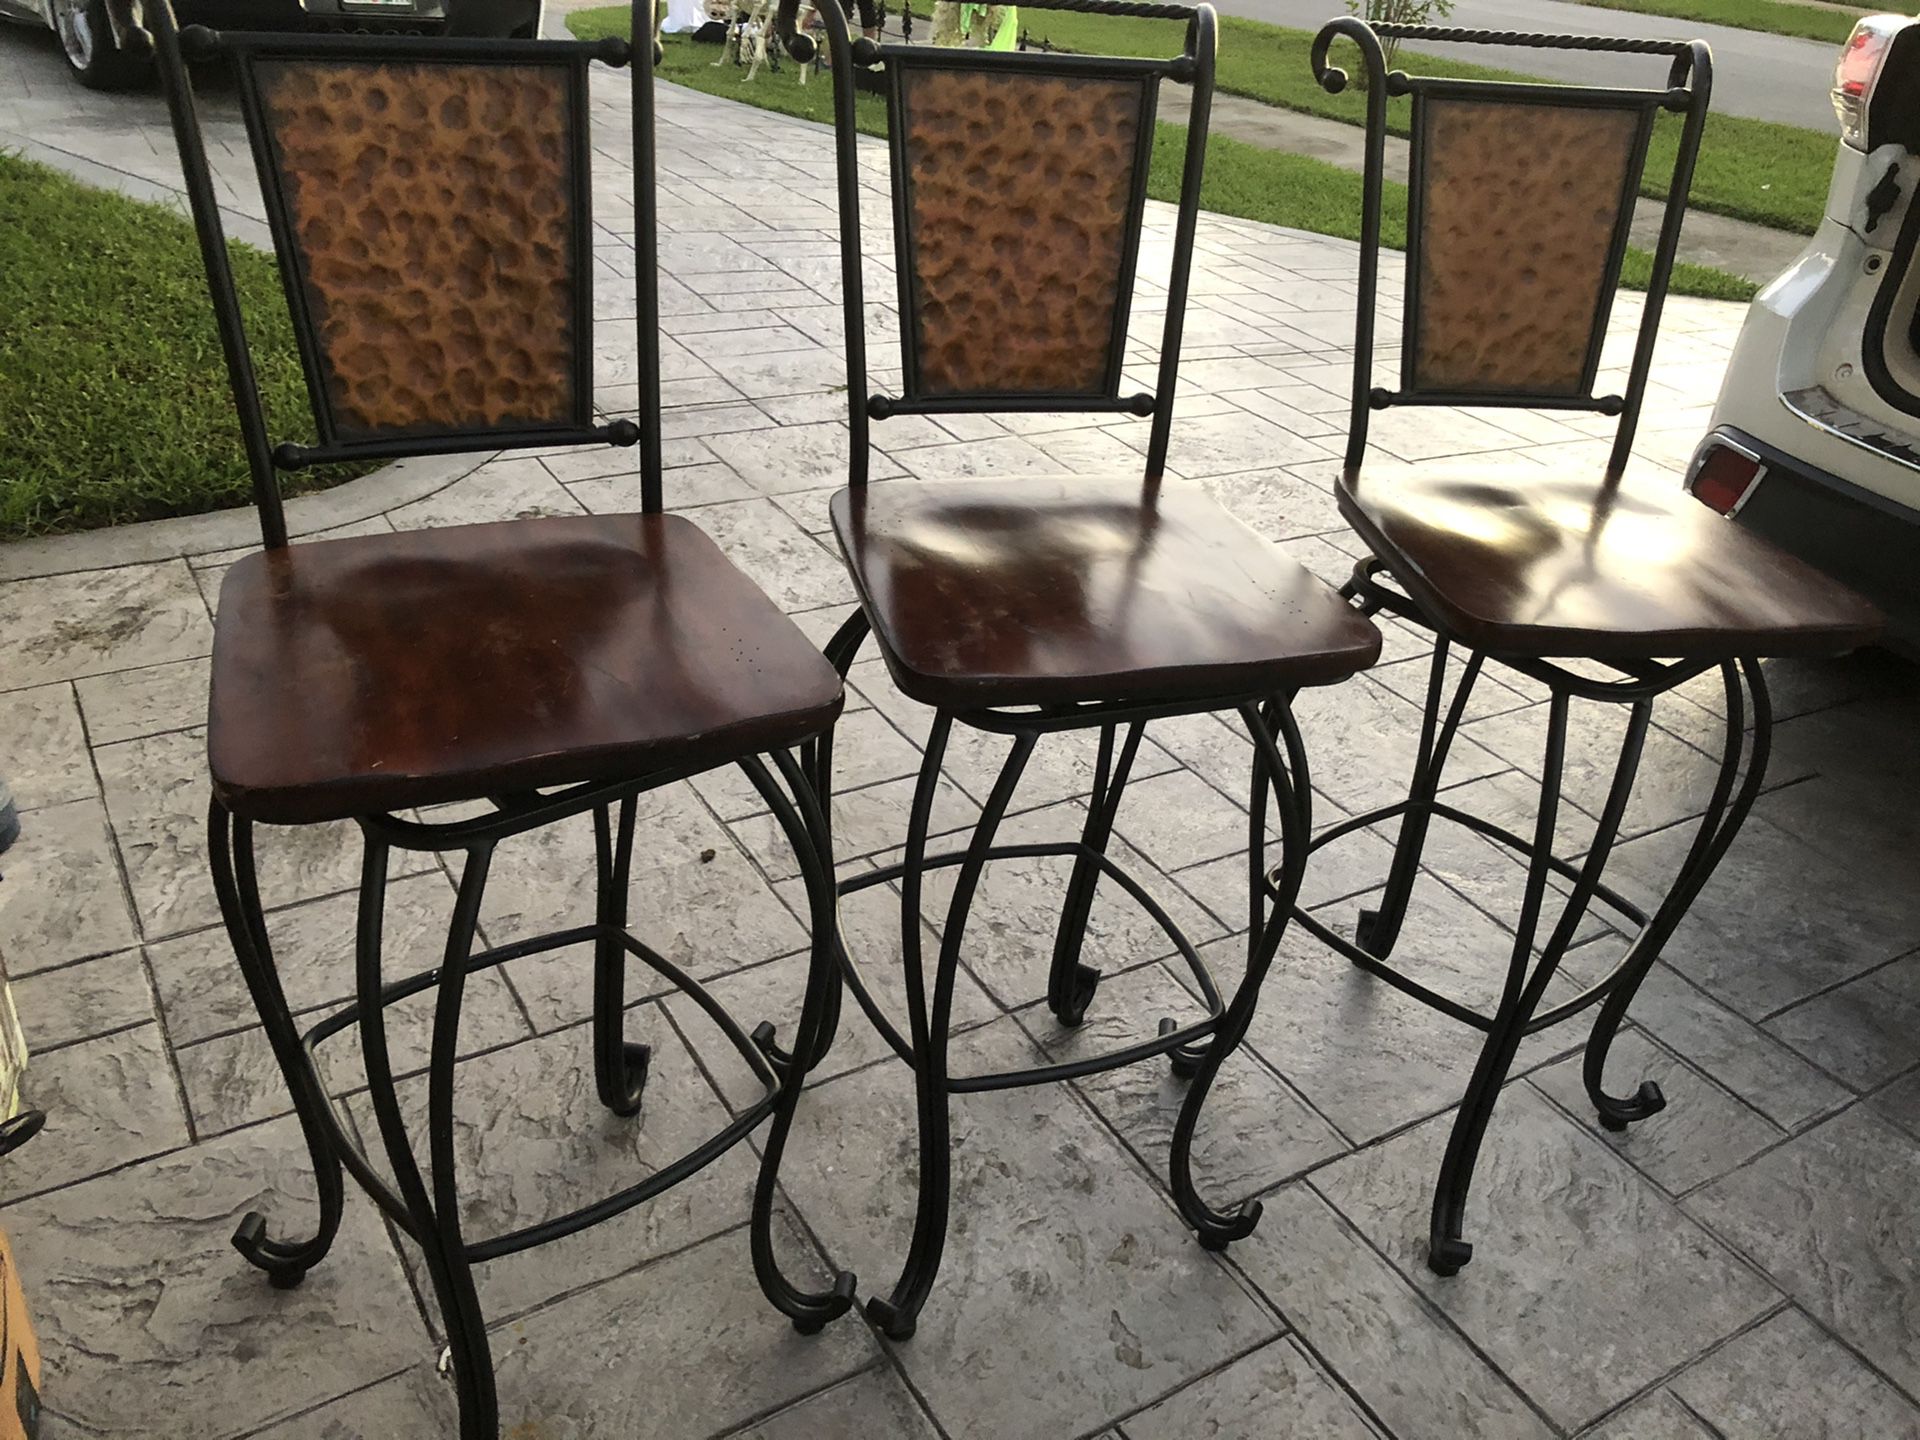 Bar or counter stools